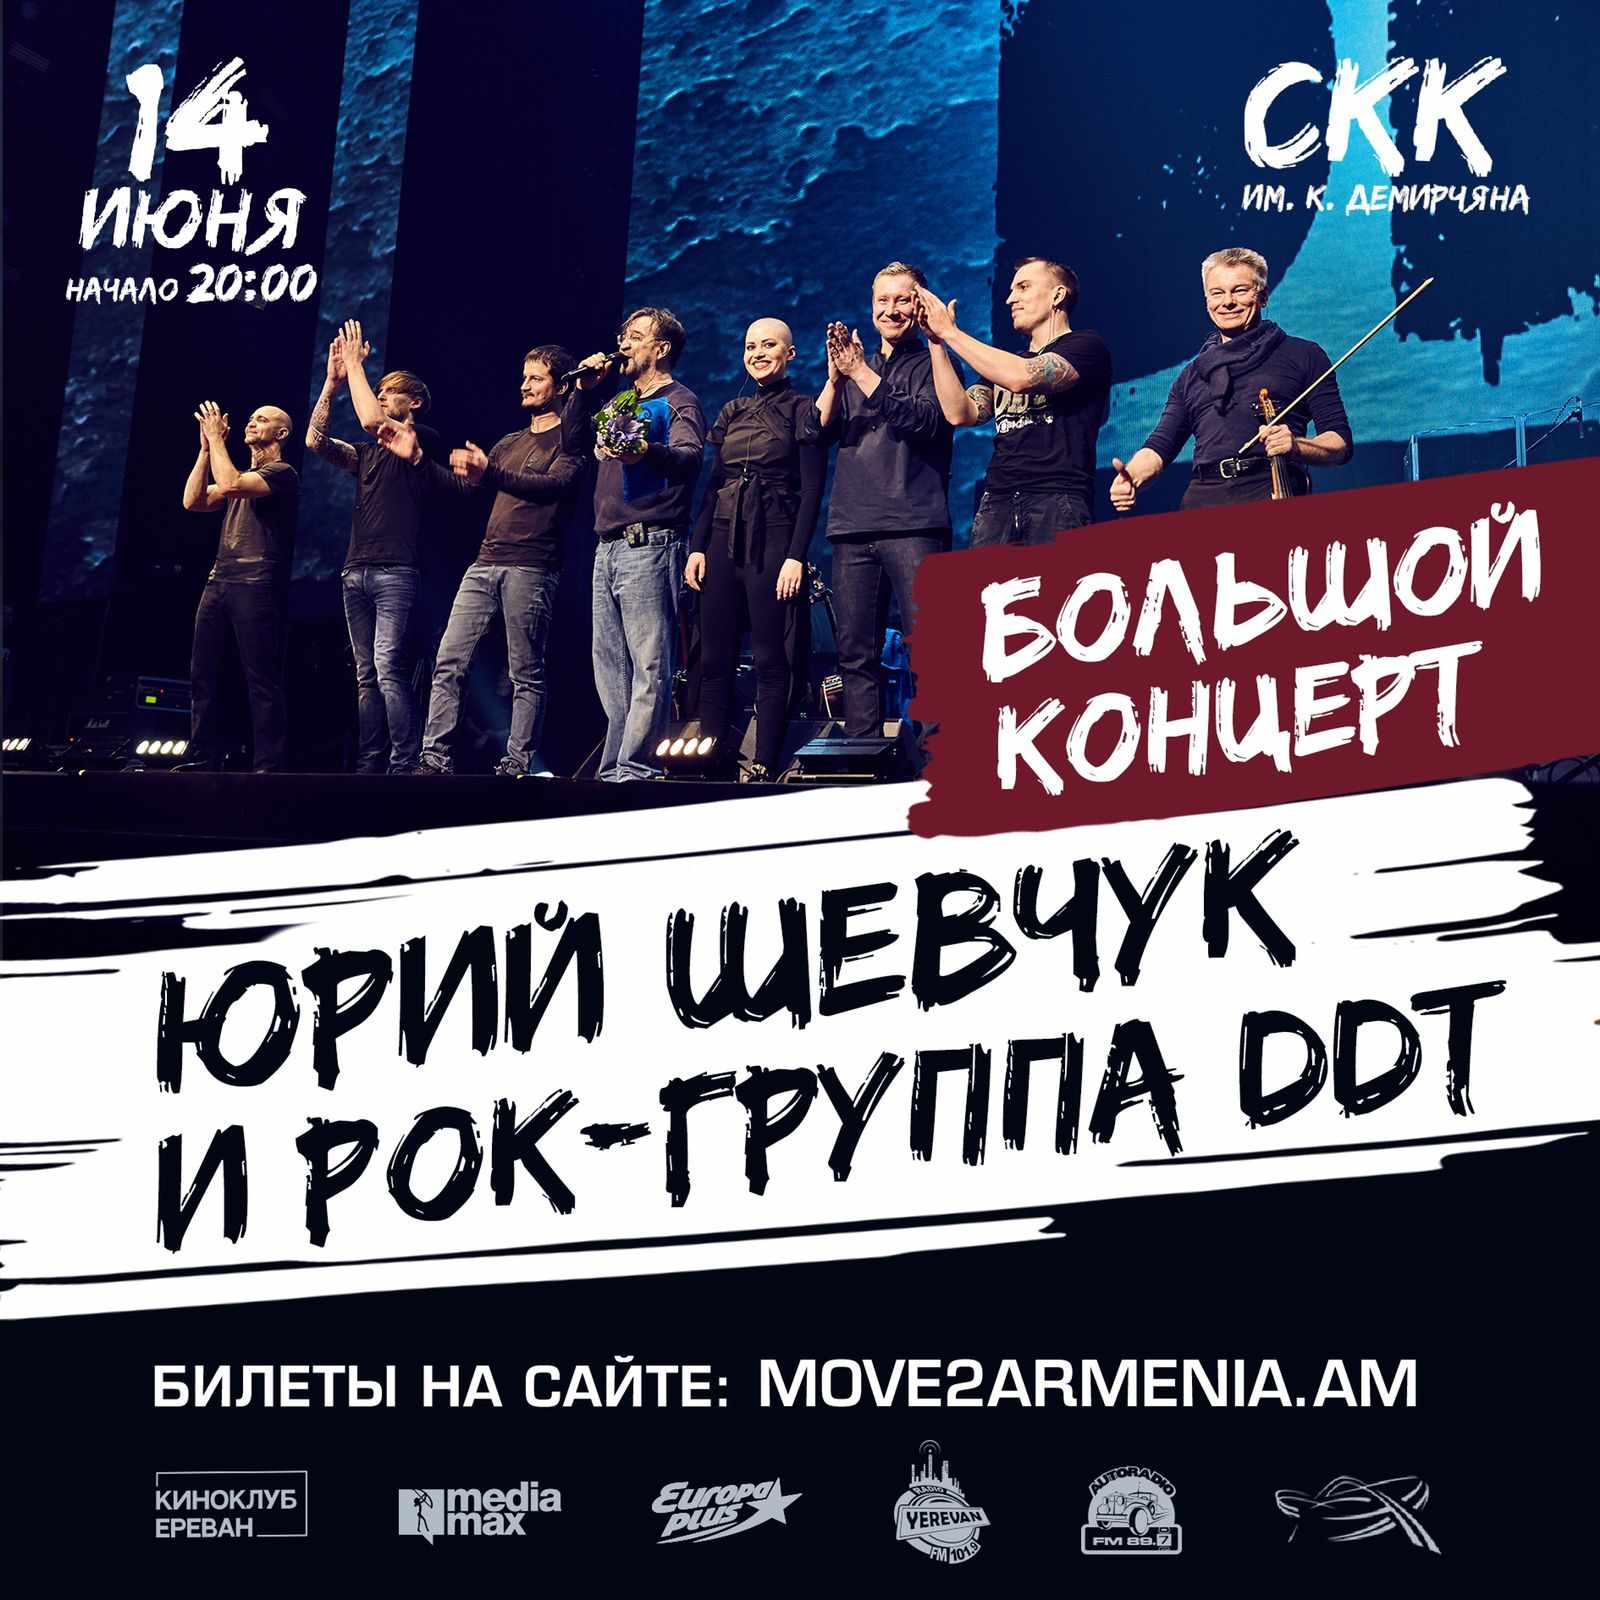 Июнь порадует любителей русского рока - ДДТ едет в Ереван!